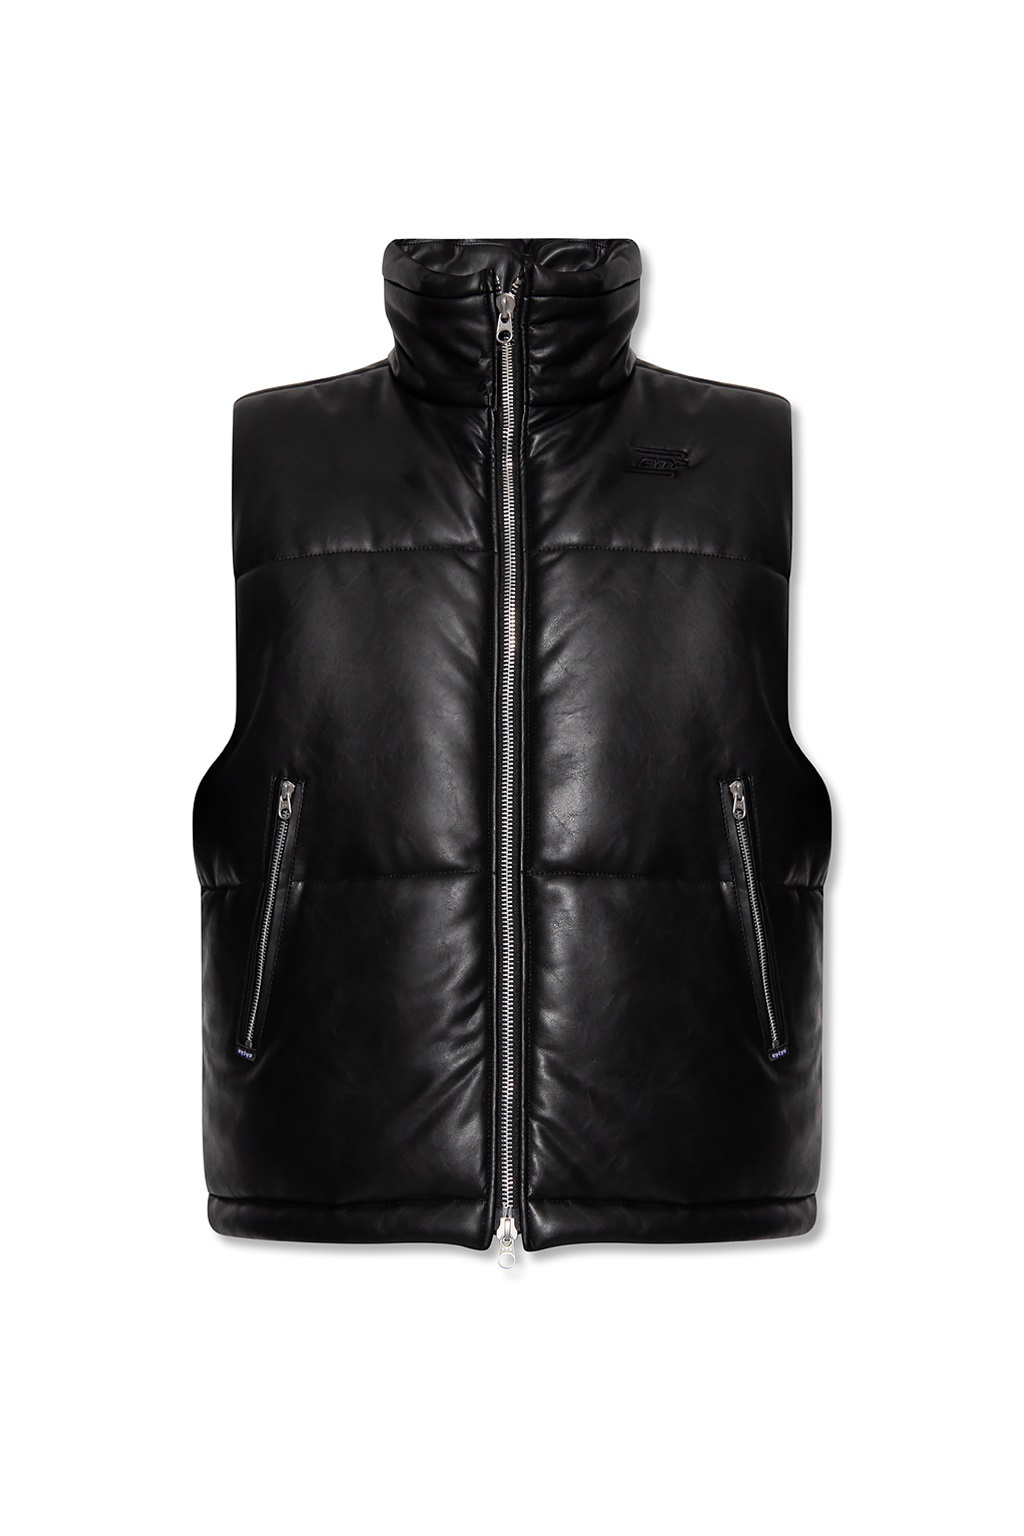 Eytys 'Octo' vegan leather vest | Men's Clothing | Vitkac